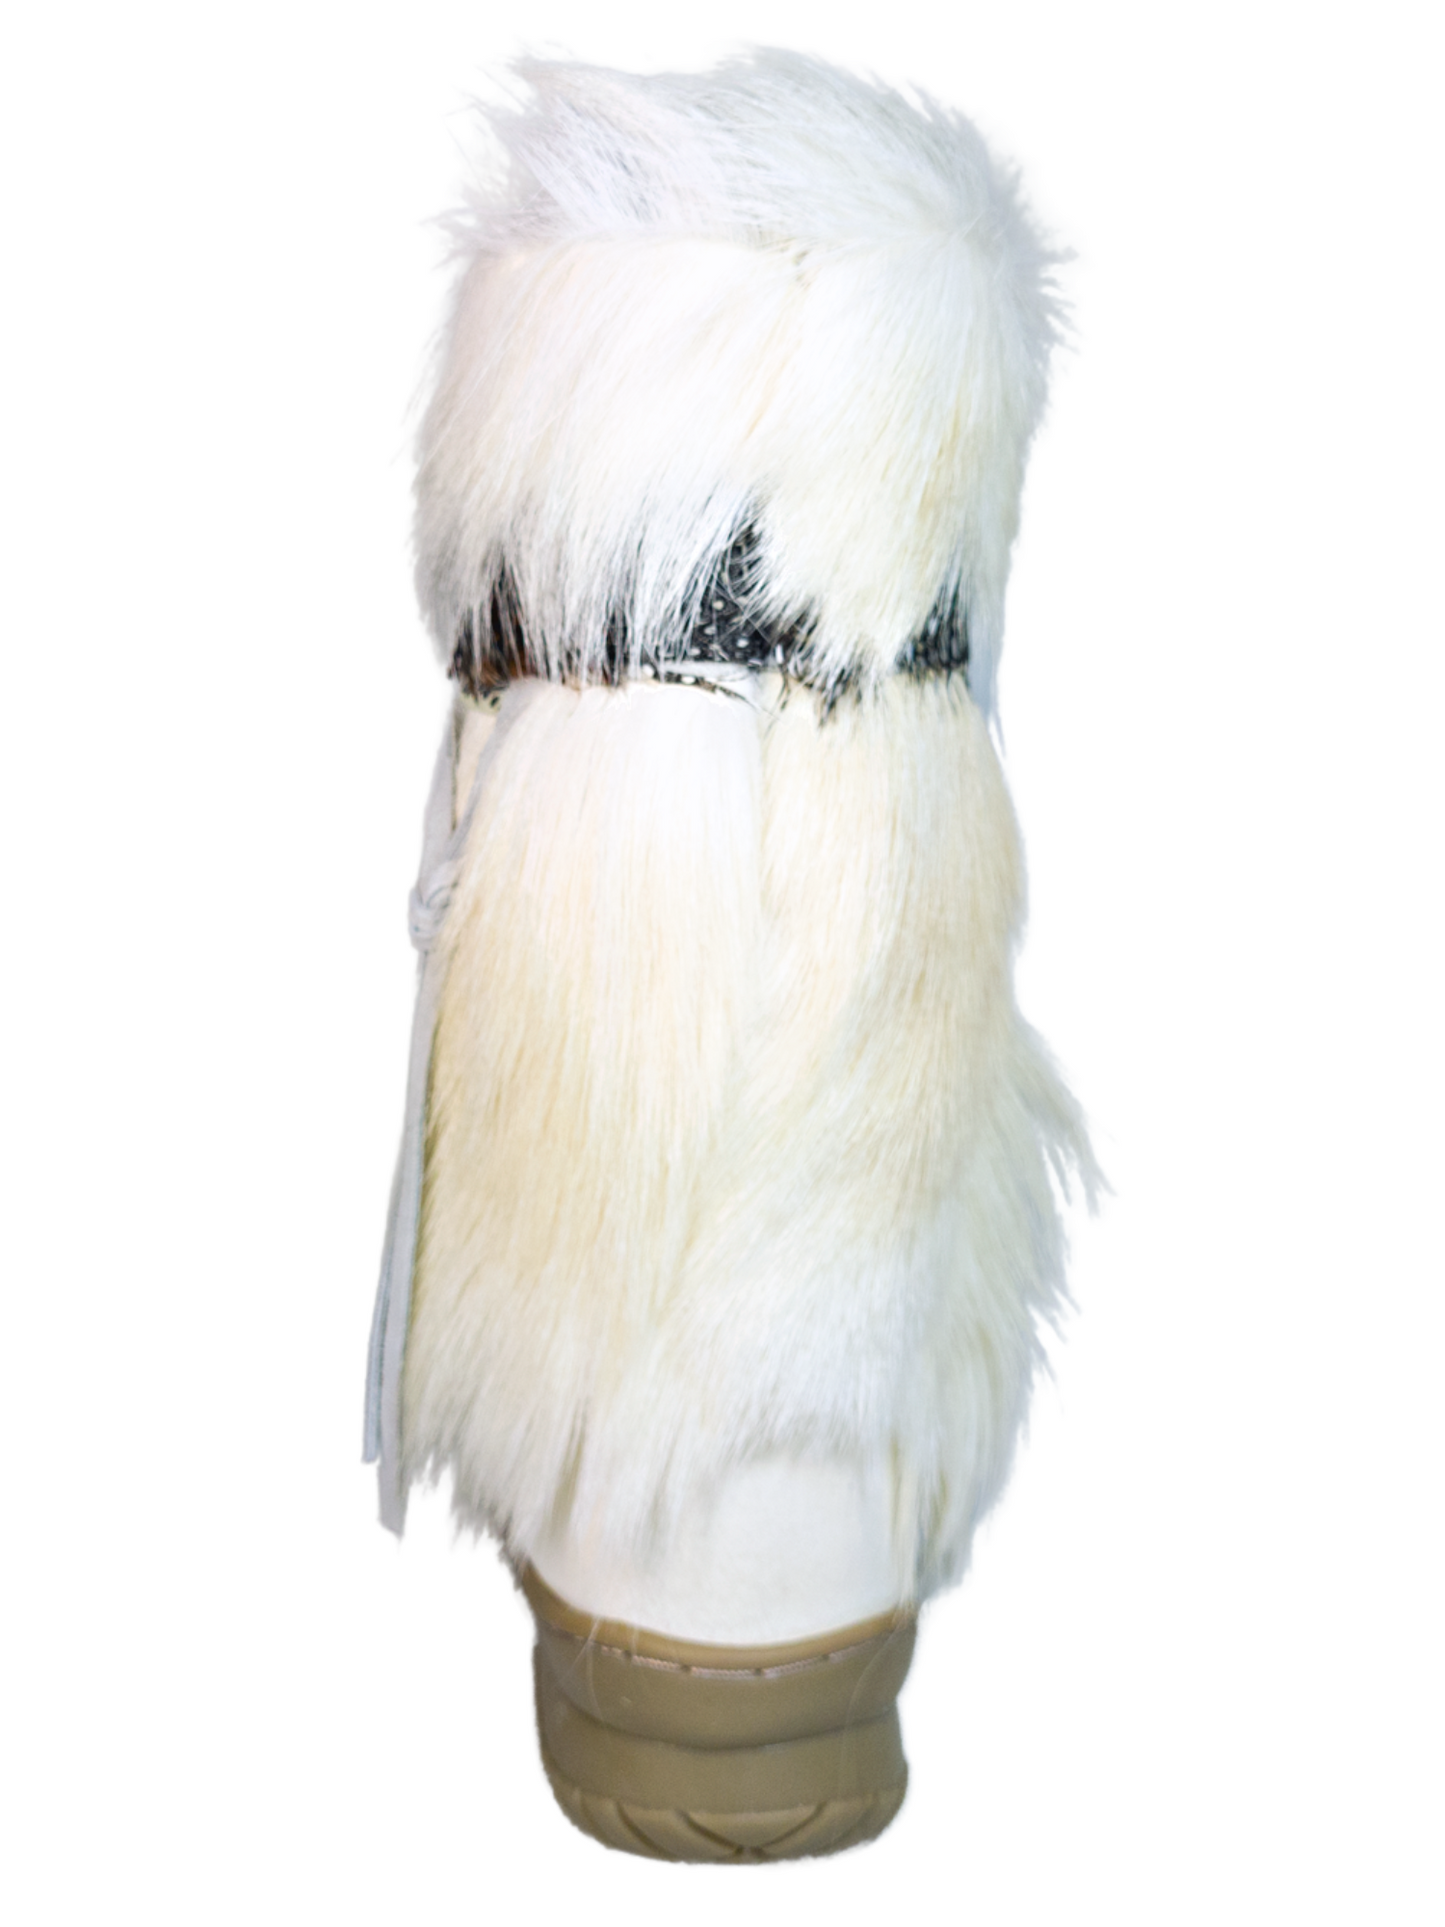 Botas de Invierno para la Nieve de Piel Genuina con Pelo/Pelo de Cabra para Mujer 'Bearpaw' - ID: 7108